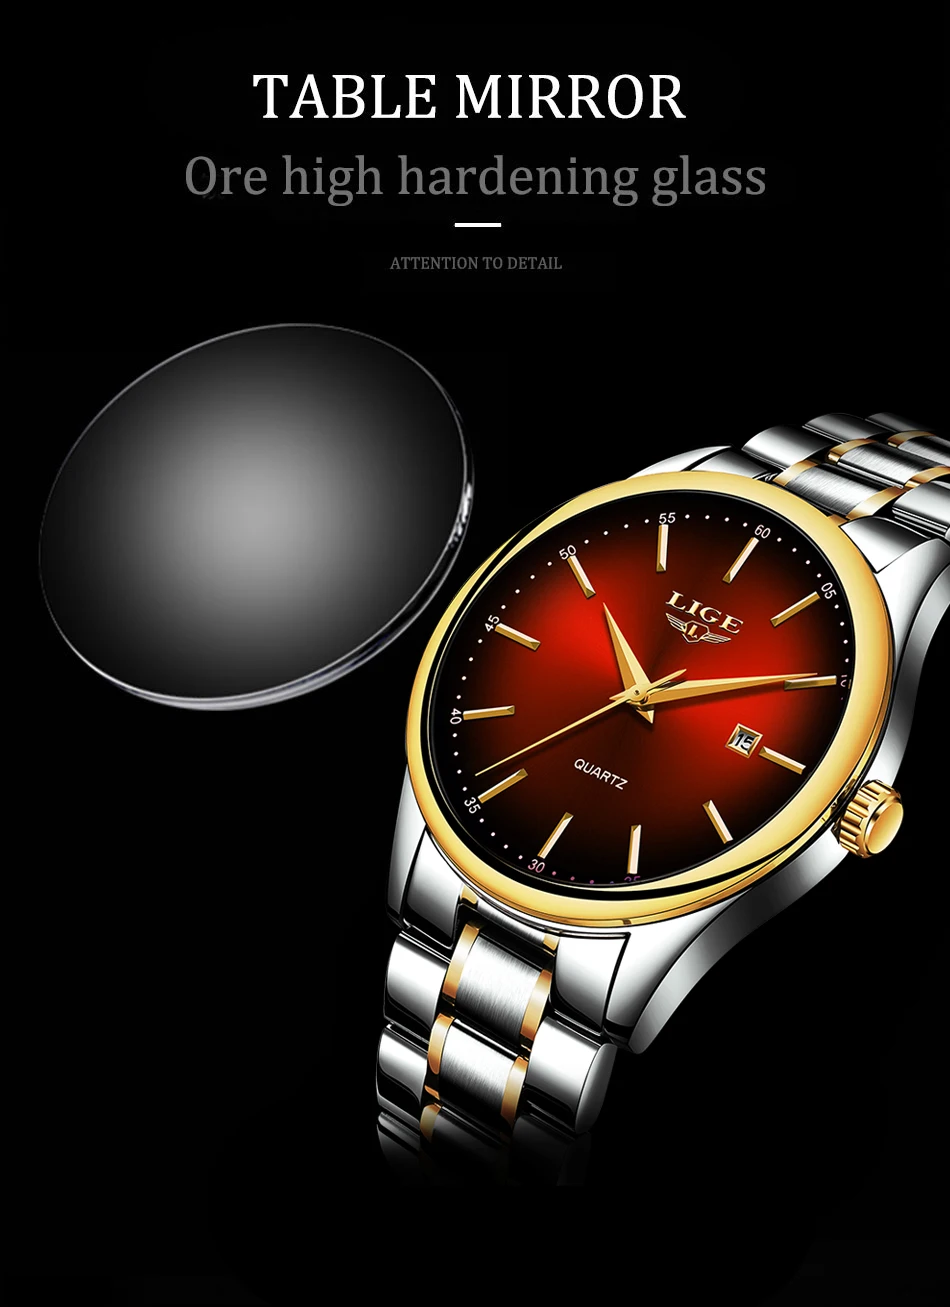 LIGE новые мужские s часы лучший бренд класса люкс полный стальной Бизнес Кварцевые часы мужские фитнес спортивные водонепроницаемые часы Relojes Hombre+ коробка